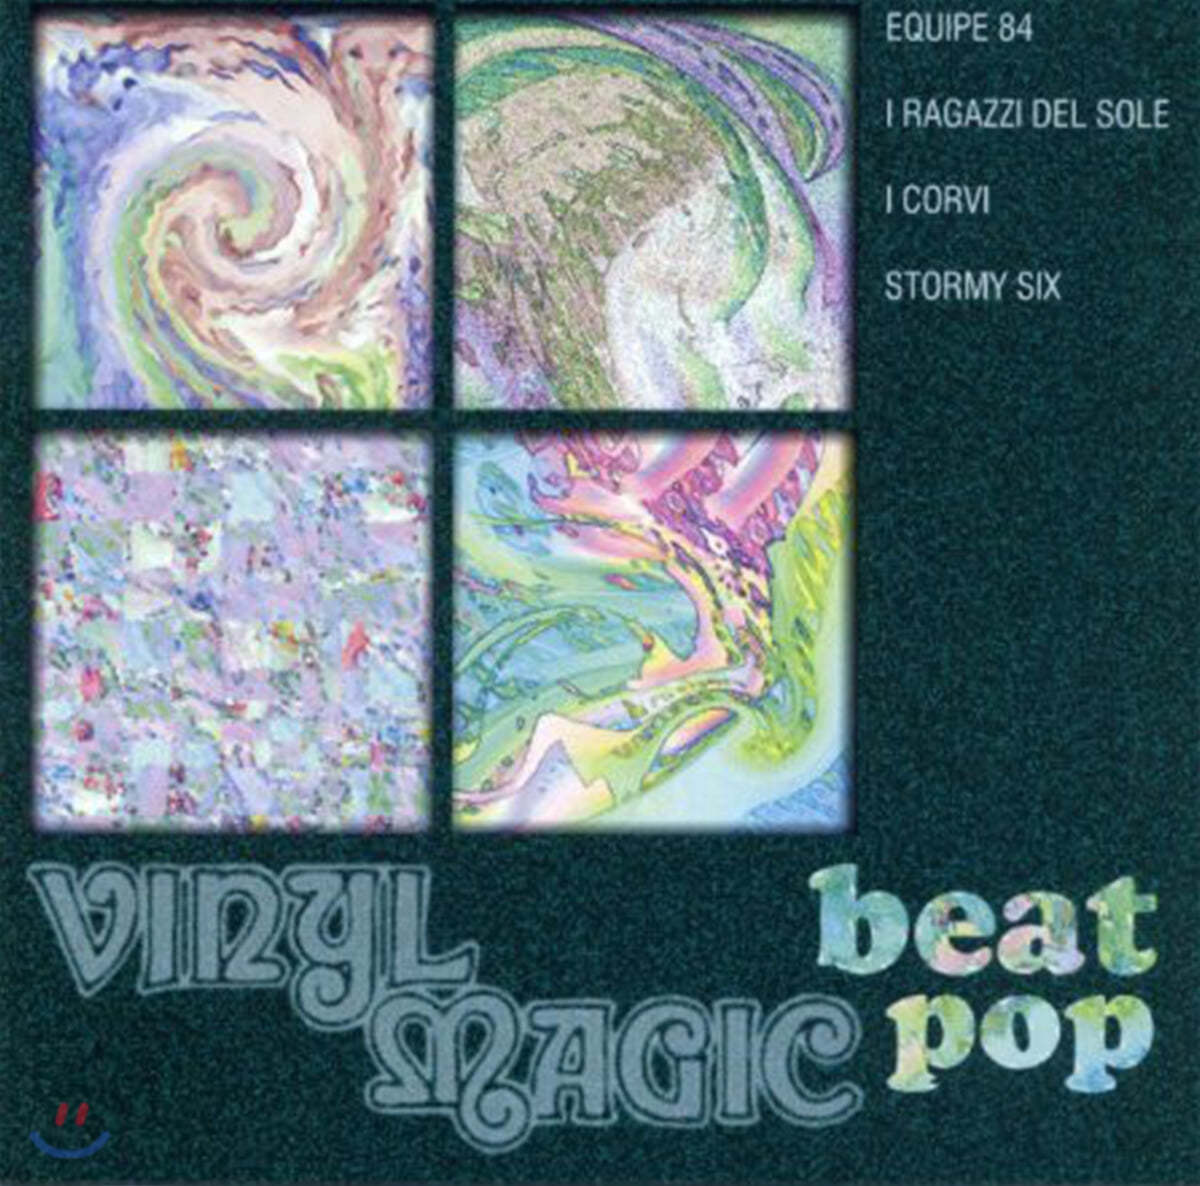 바이닐 매직 비트 팝 컴필레이션 앨범 (Vinyl Magic Beat Pop)